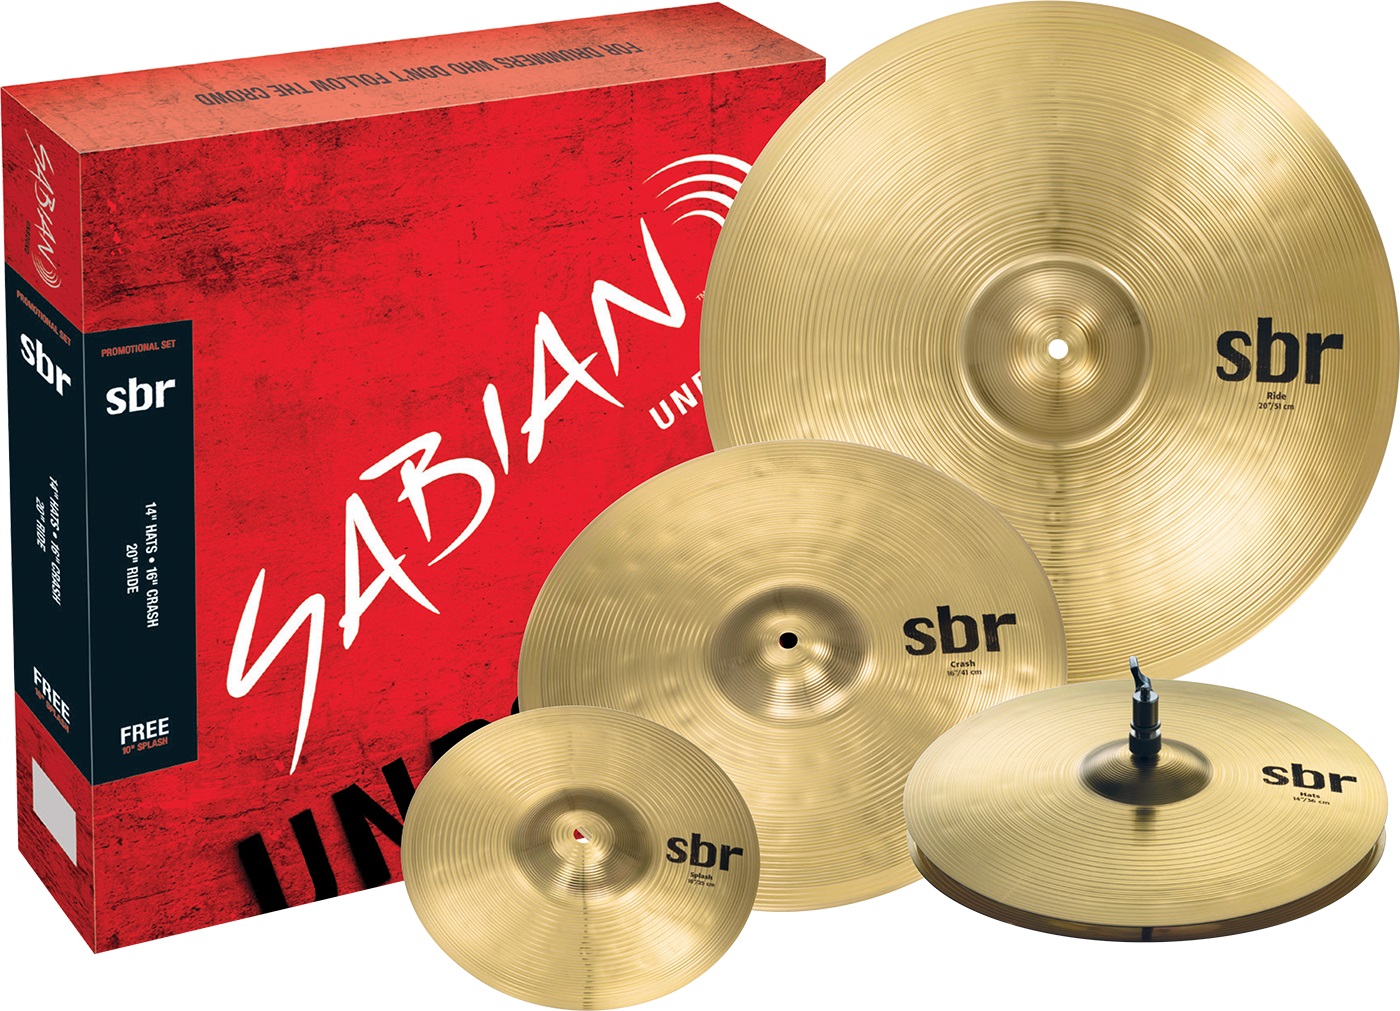 Тарелки, барабаны для ударных установок Sabian SBr Promotional Pack тарелки барабаны для ударных установок sabian 18 aa rock crash